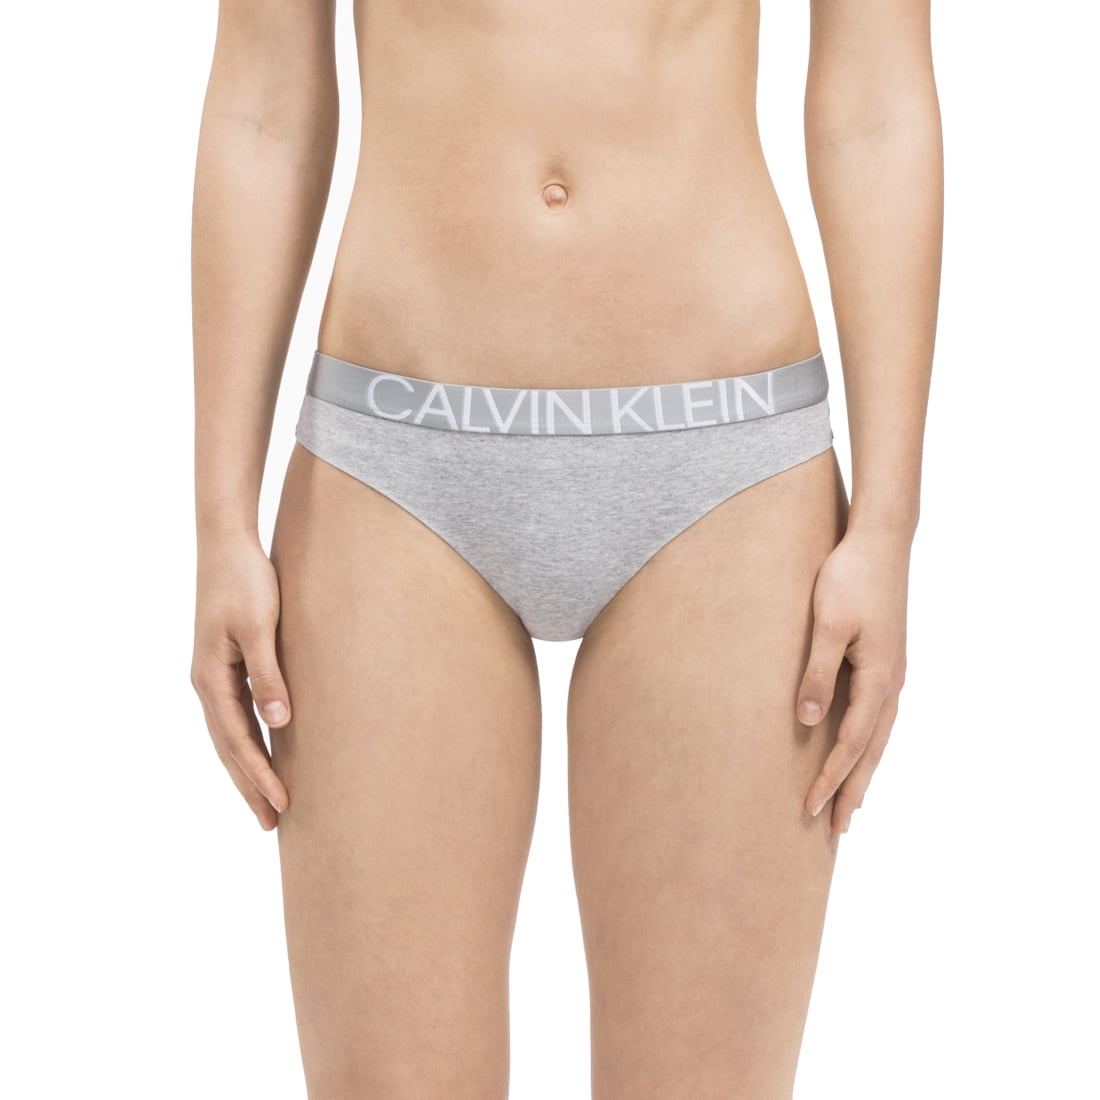 Calvin Klein Underwear Women's Plus Size Intimates